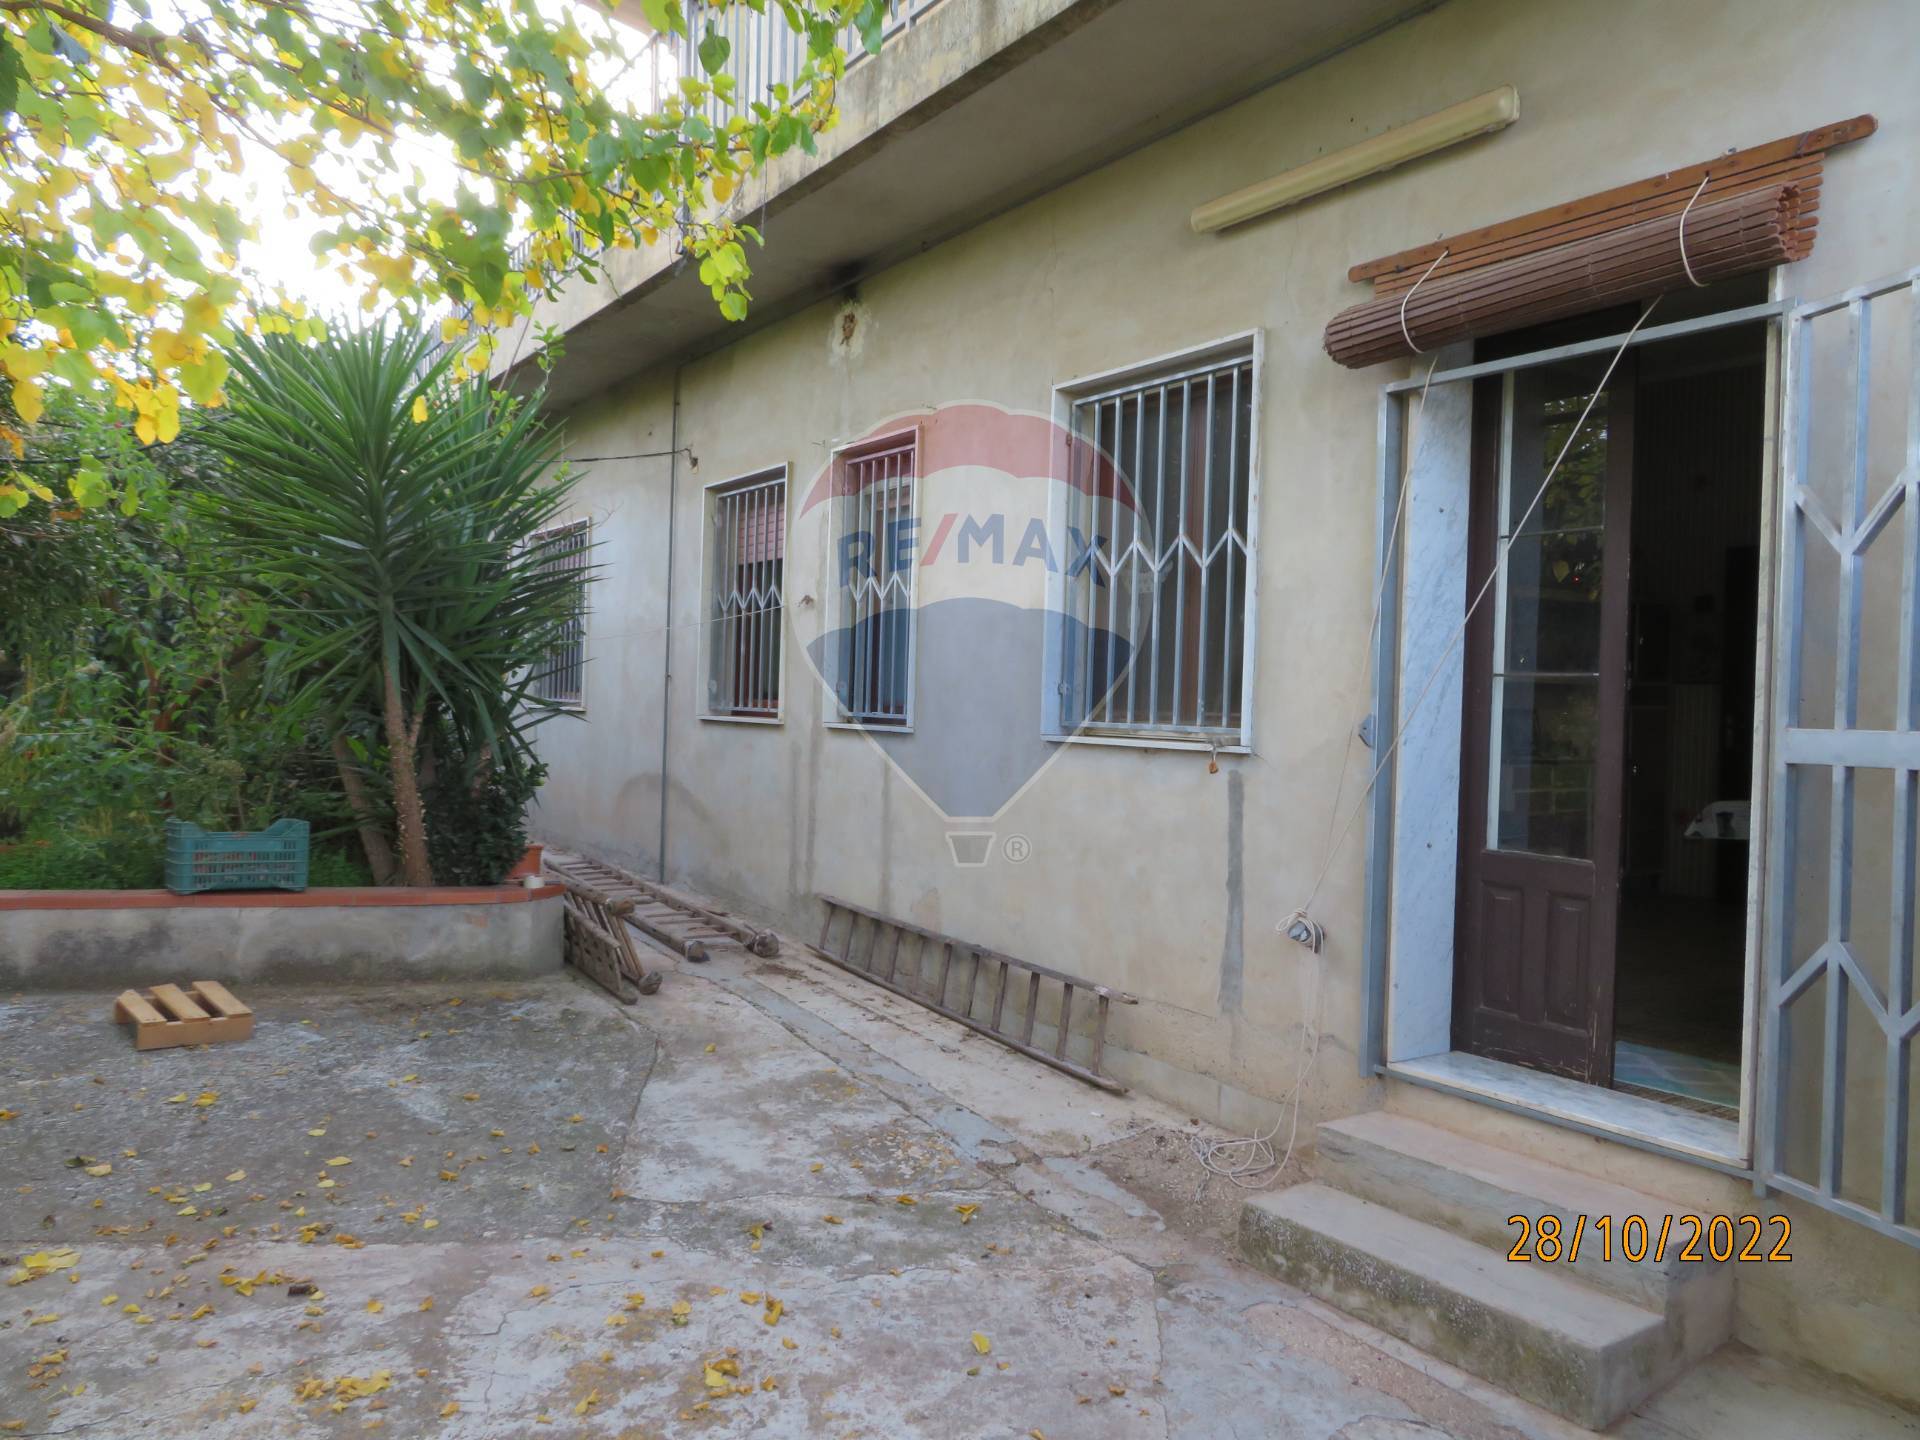 Villa in vendita a Chiaramonte Gulfi, 7 locali, zona Zona: Roccazzo, prezzo € 170.000 | CambioCasa.it